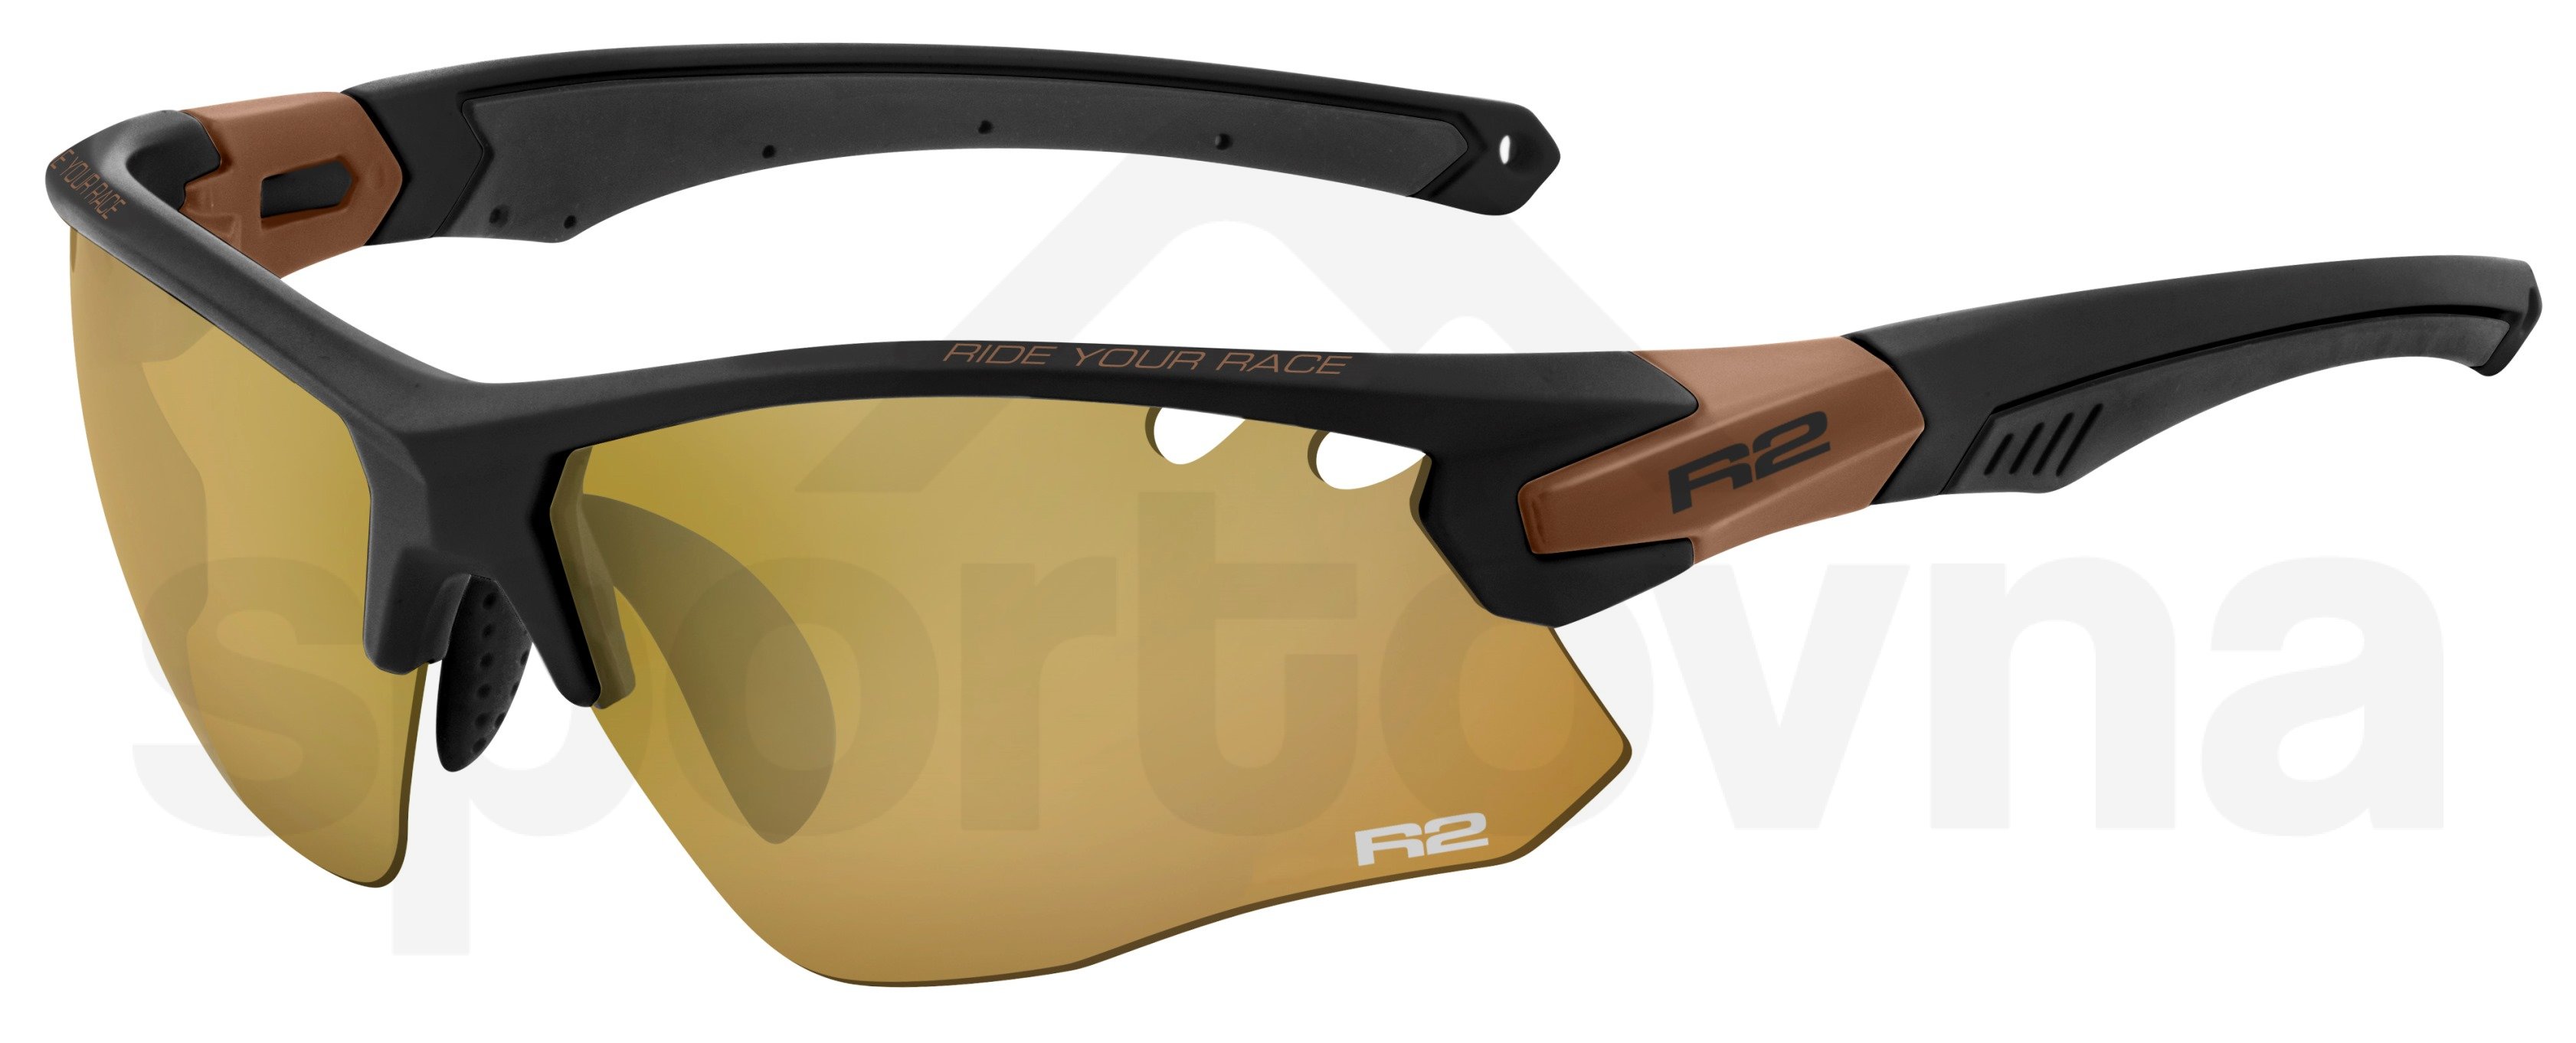 Sportovní brýle R2 Crown - černá/hnědá